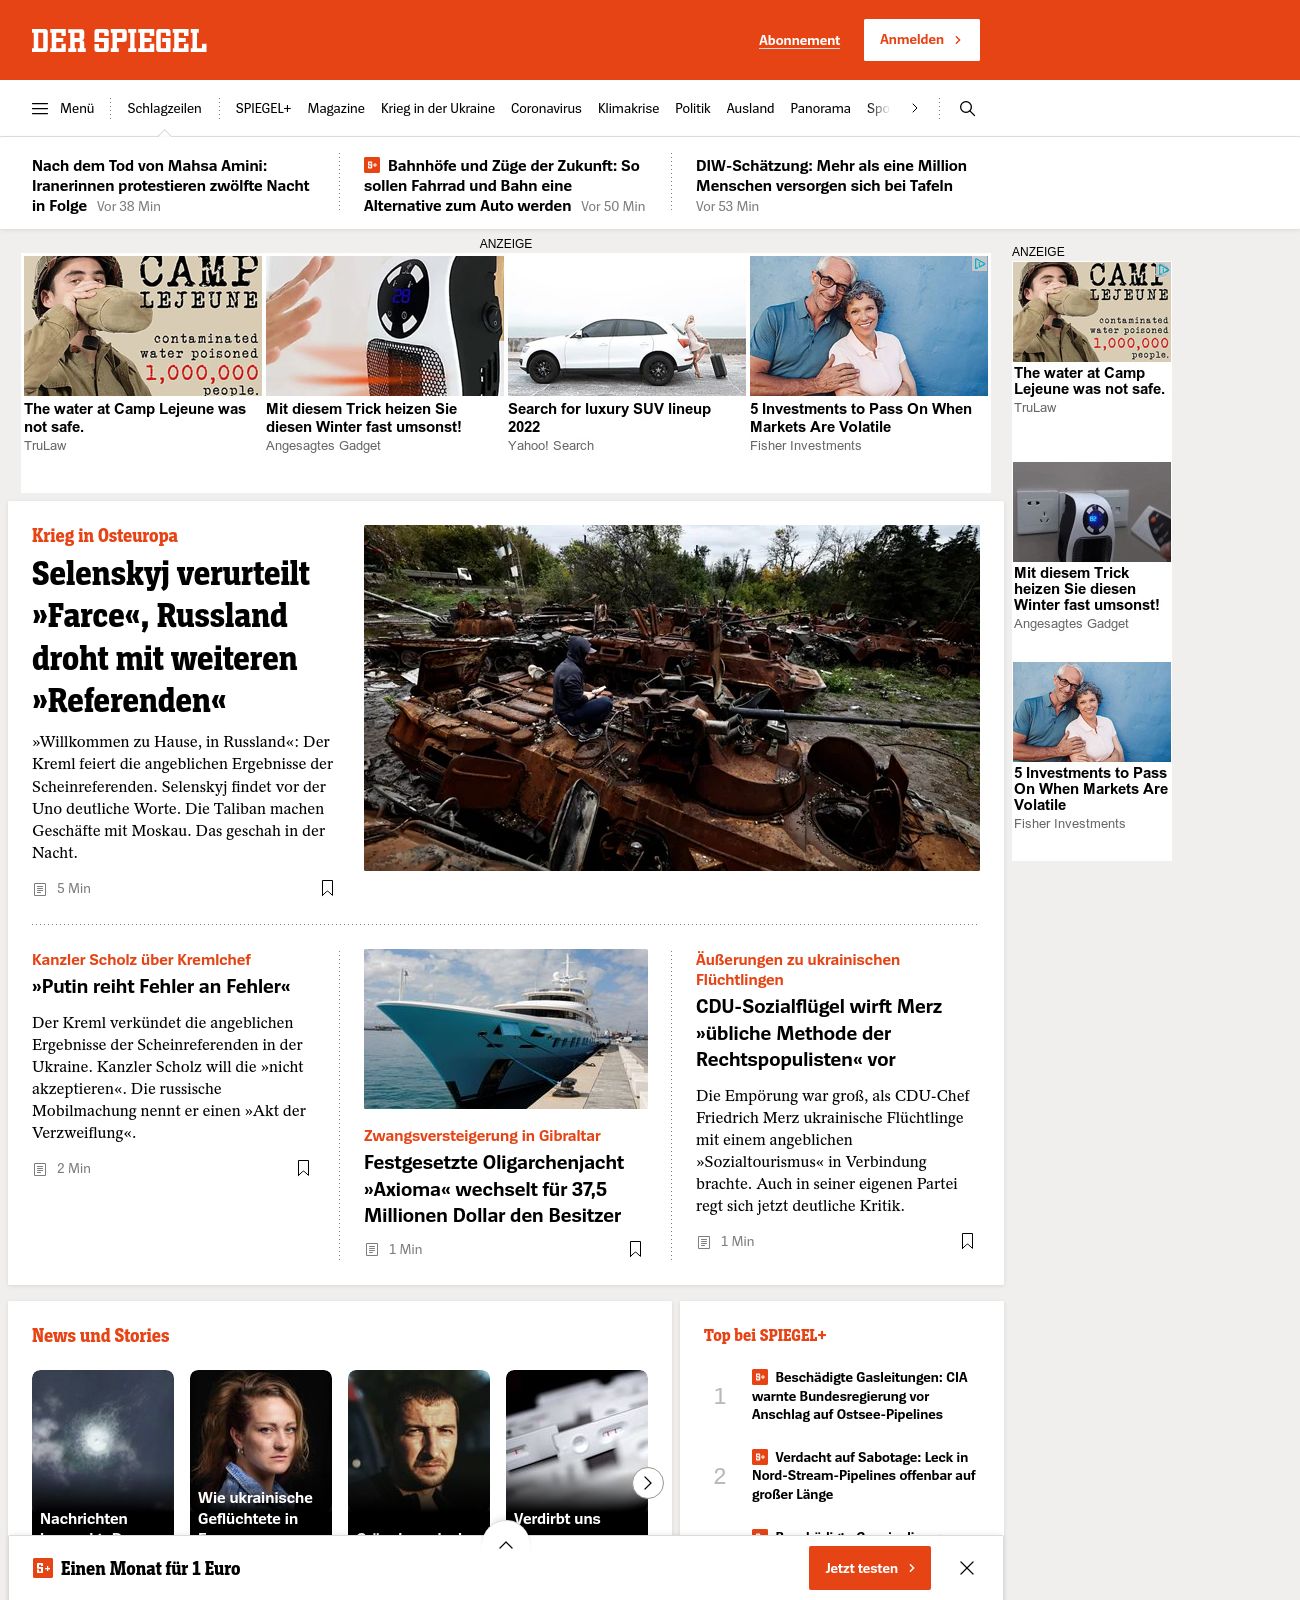 Der Spiegel at 2022-09-28 08:20:59+02:00 local time